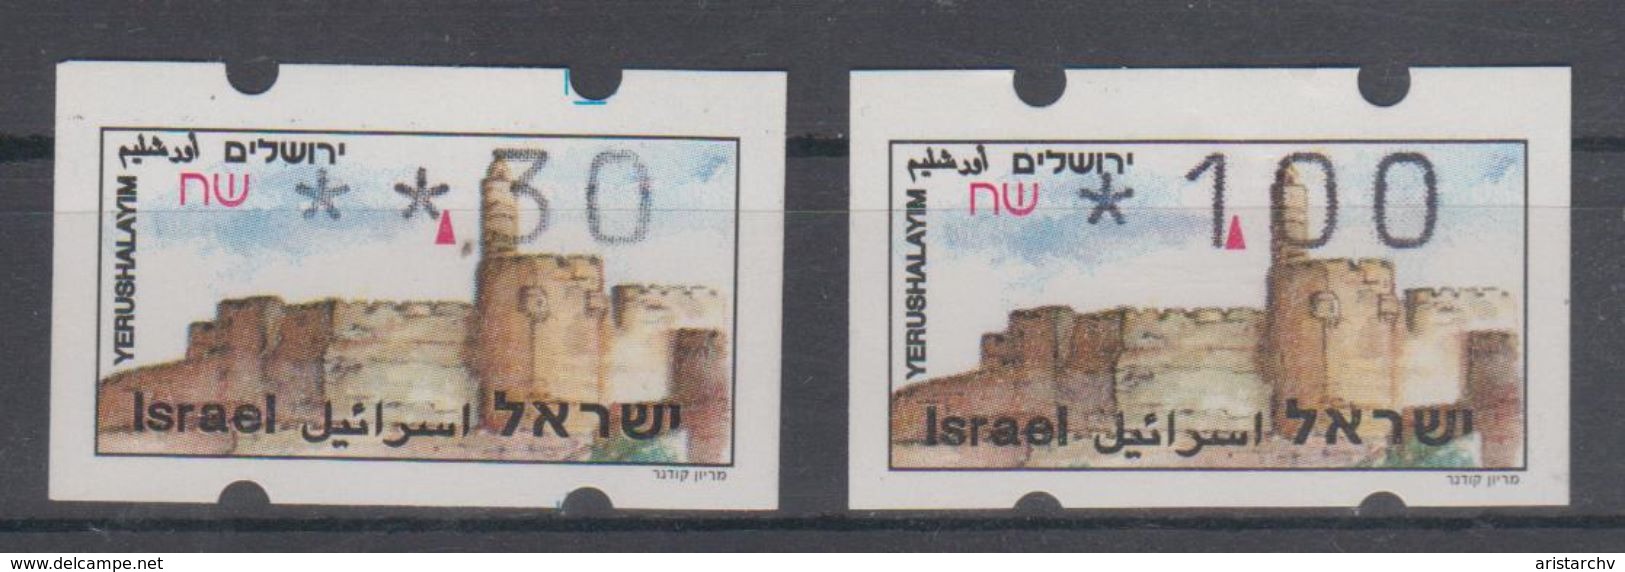 ISRAEL 1994 SIMA ATM JERUSALEM YERUSHALAYIM 0.30 1 SHEKELS - Vignettes D'affranchissement (Frama)